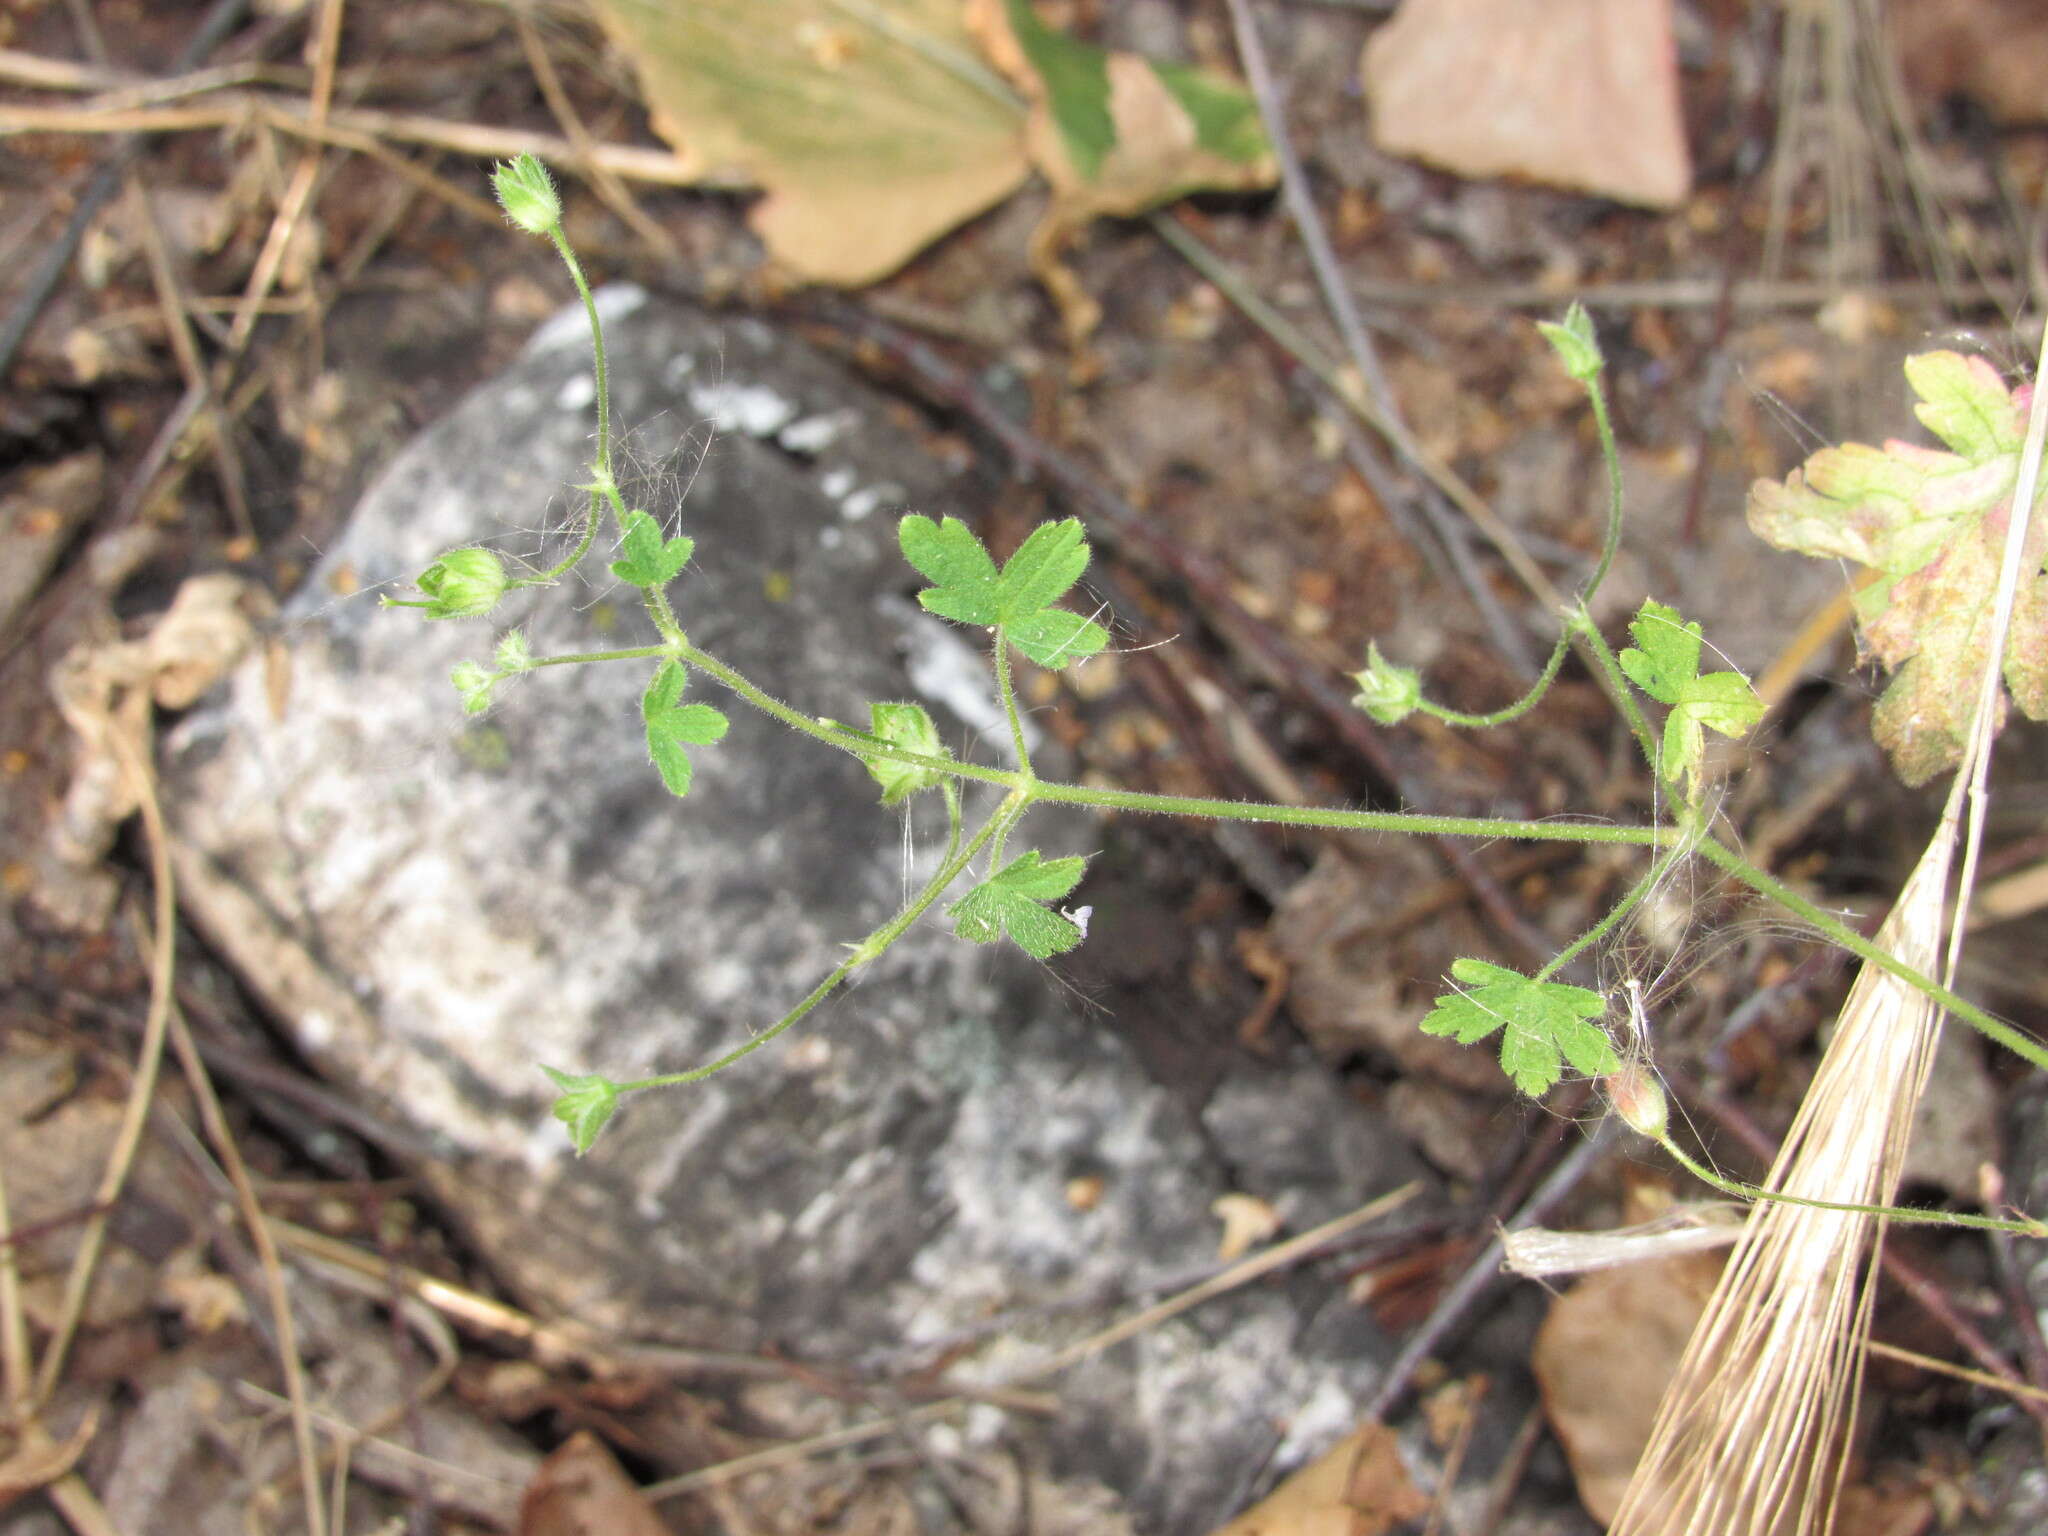 Image of fanleaf geranium